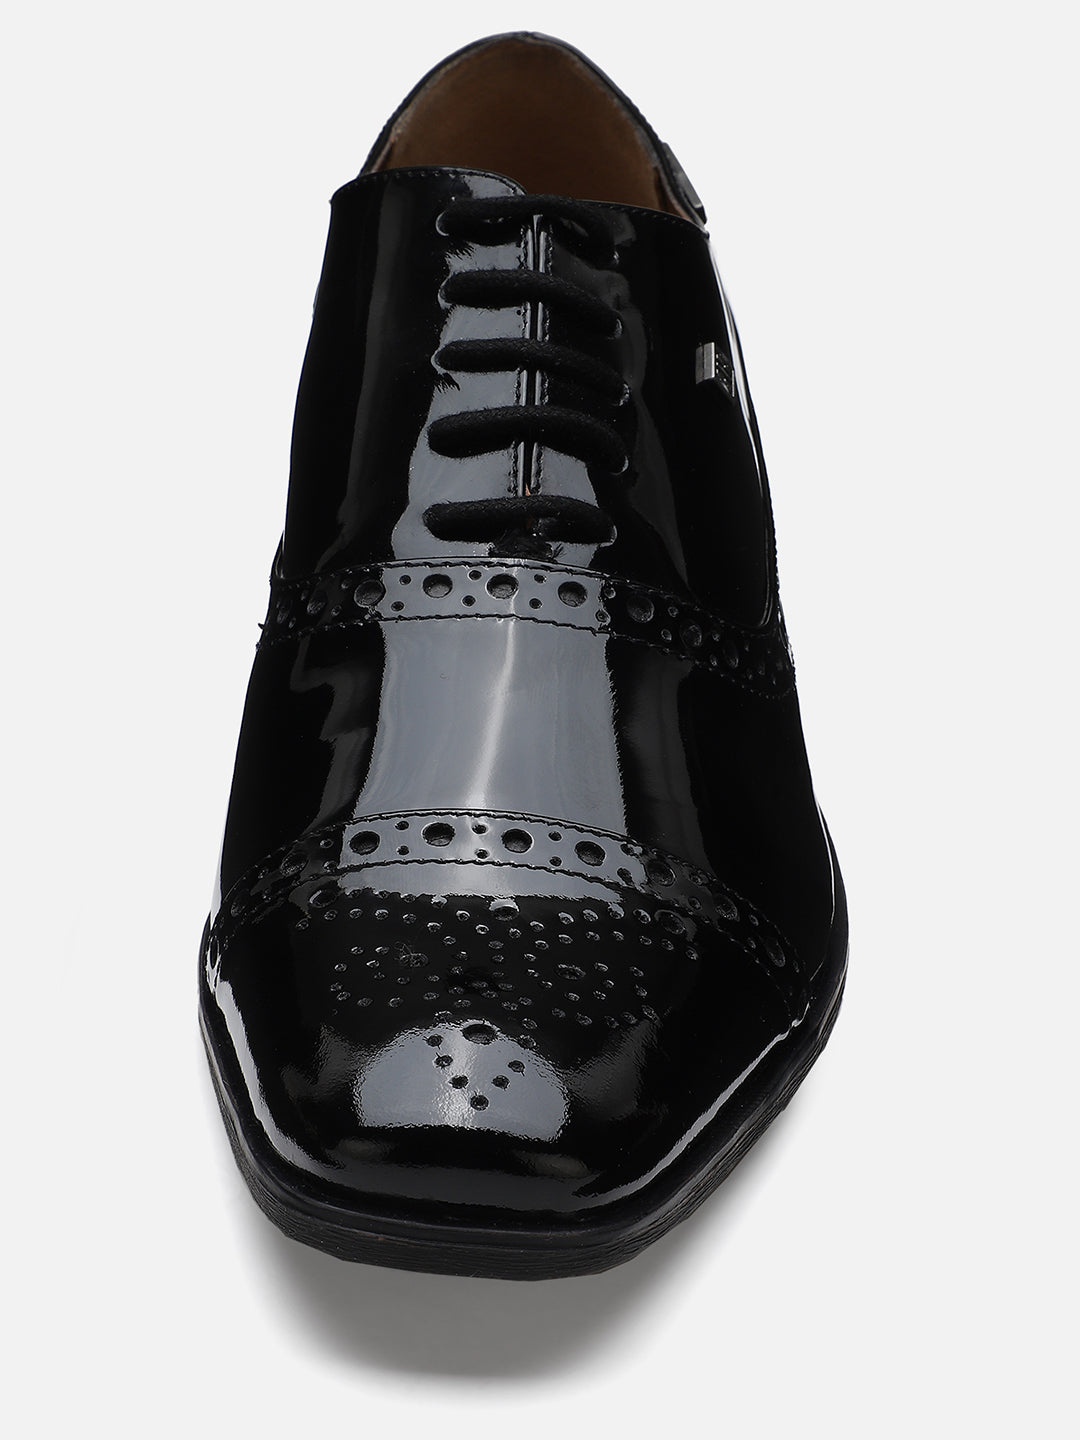 Ezok Men Black Leather Formal Shoes